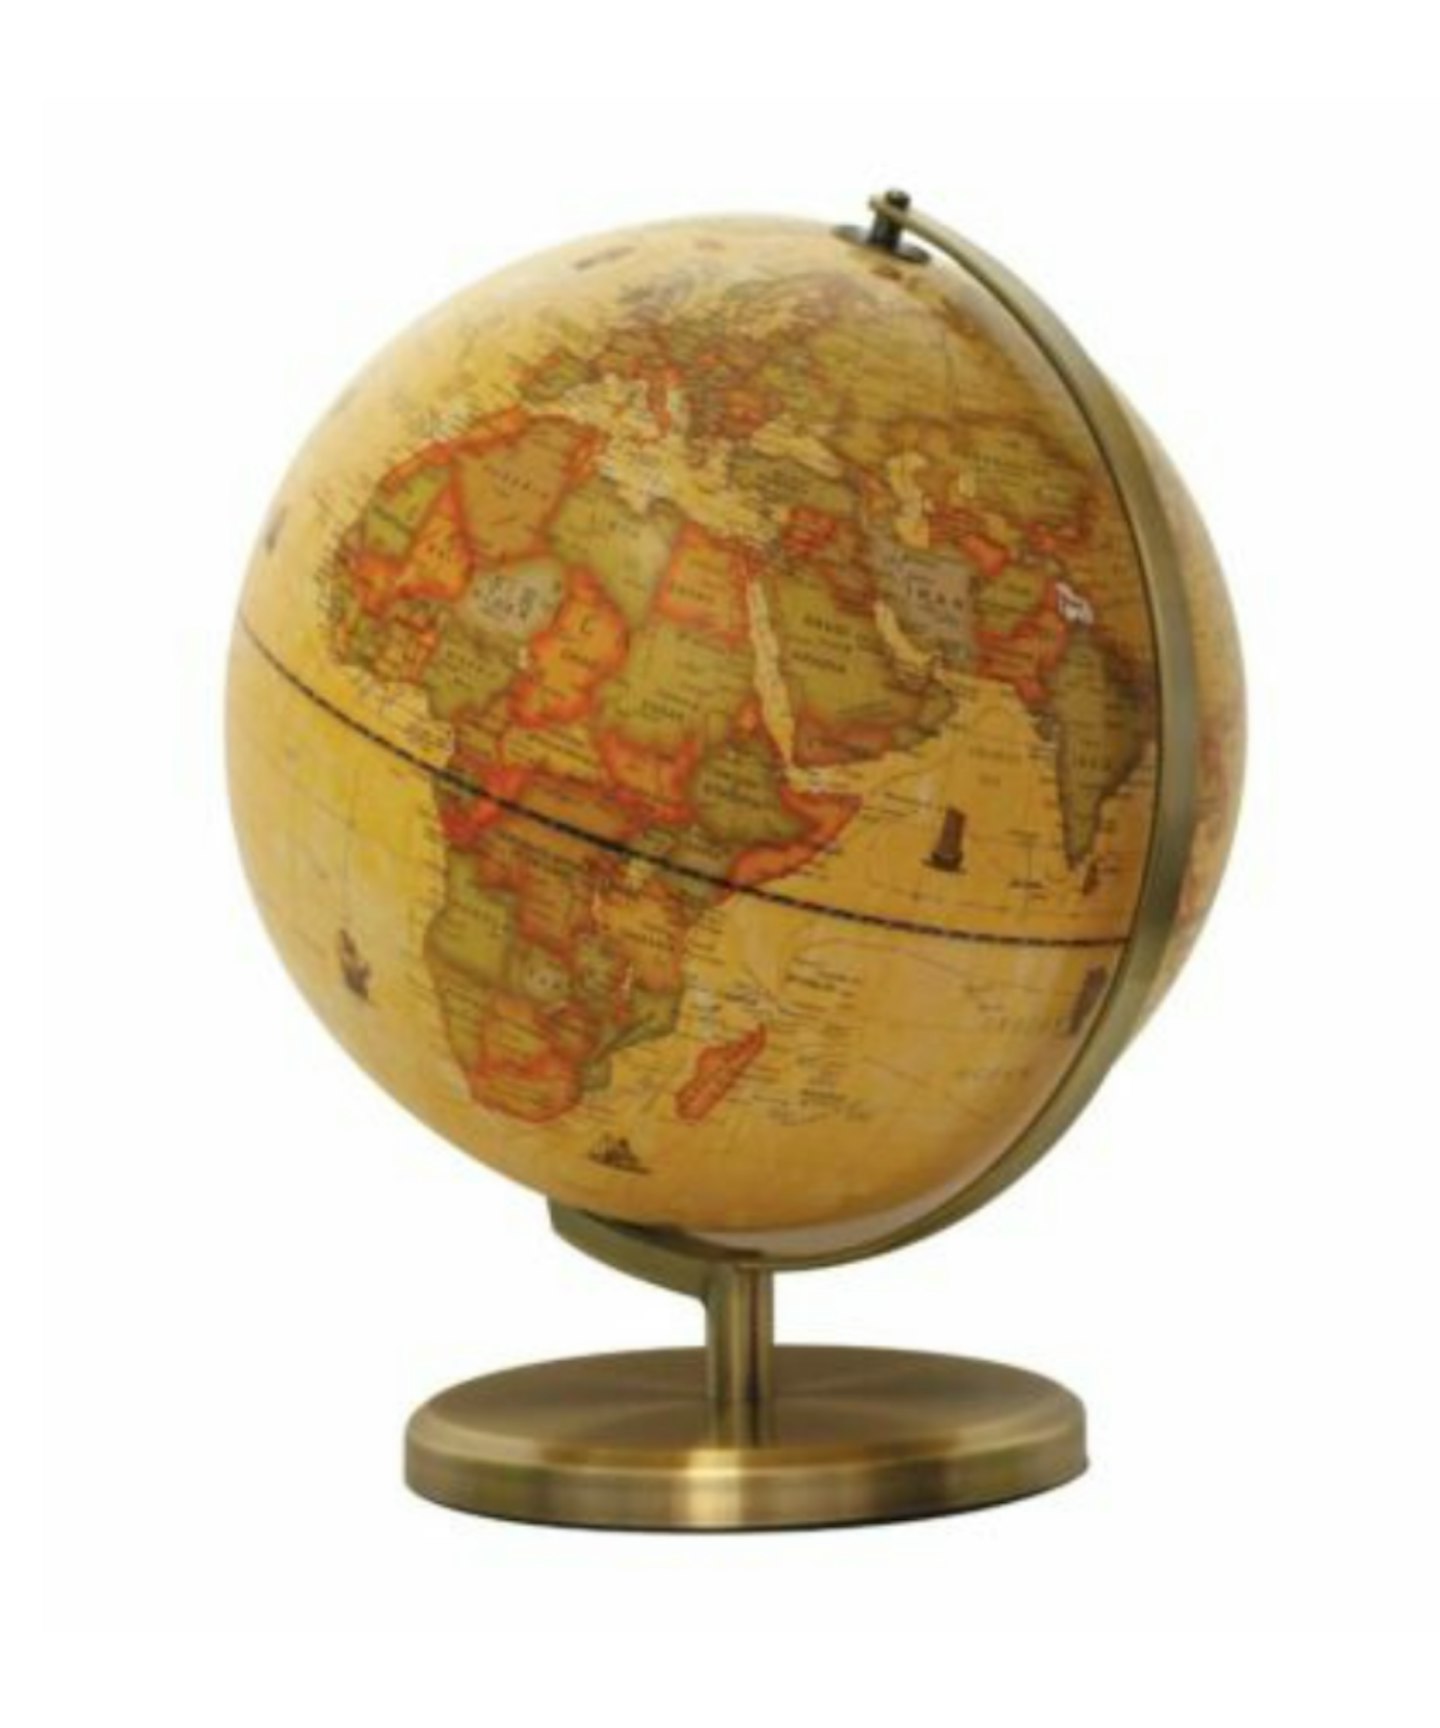 Ryman Illuminated Antique Globe with Brush Metal Base 30cm